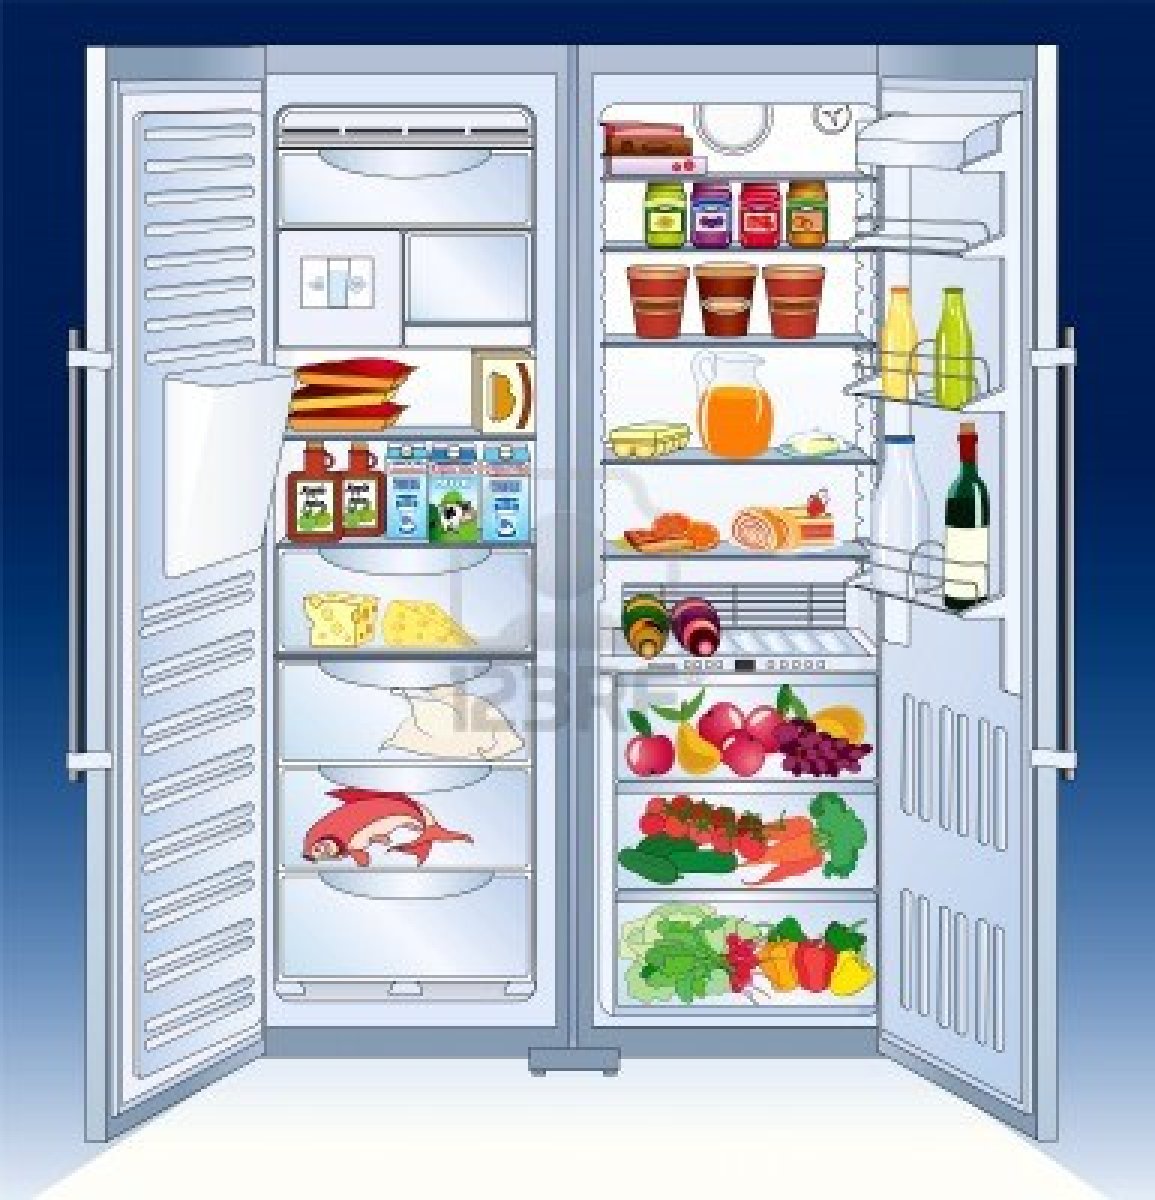 fridge images clip art - photo #48